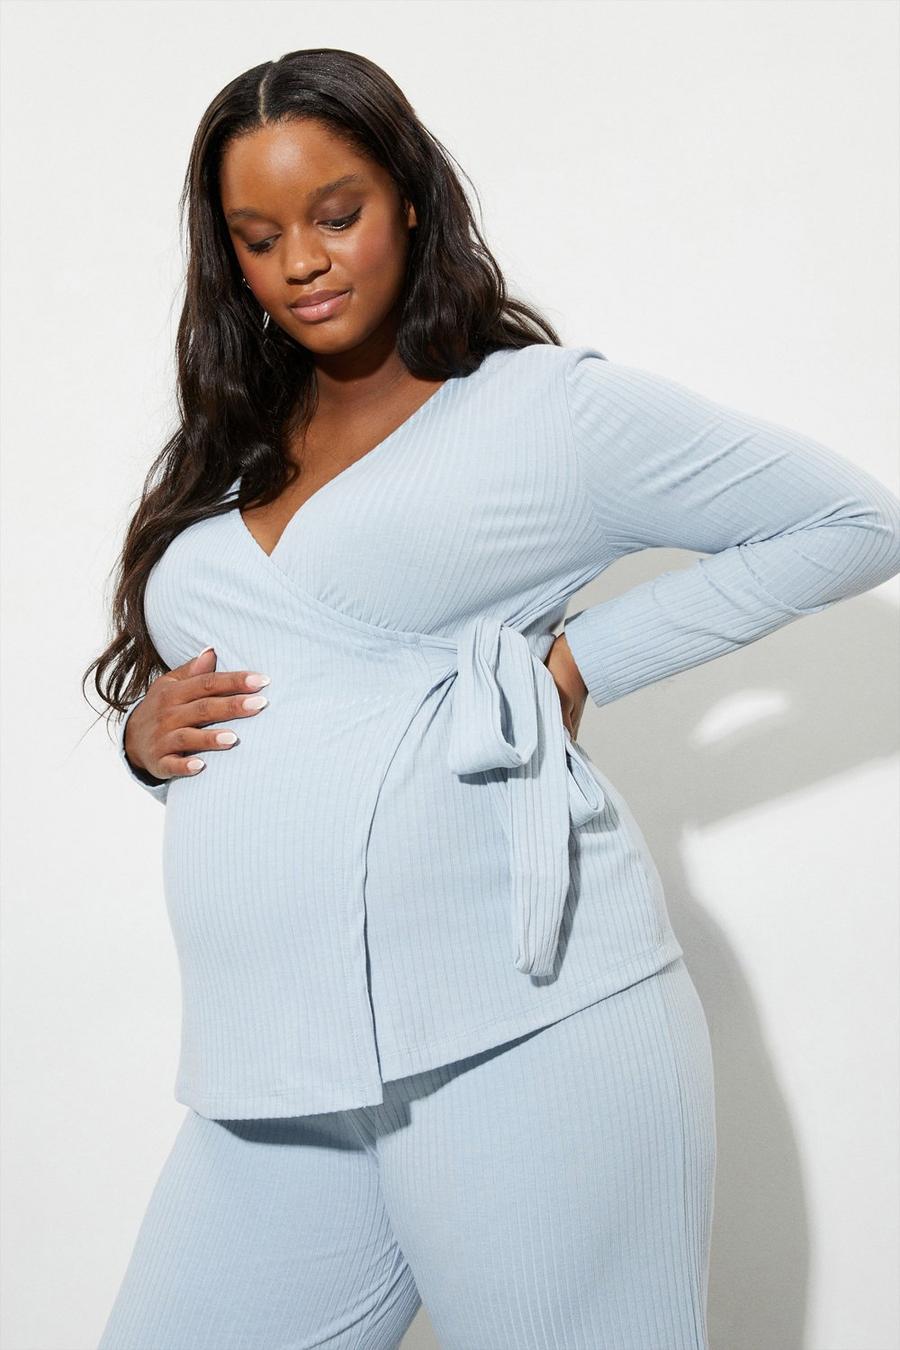 Dorothy Perkins Maternity Ruch Wrap Nursing Top Blusa Pre-Mama para Mujer 